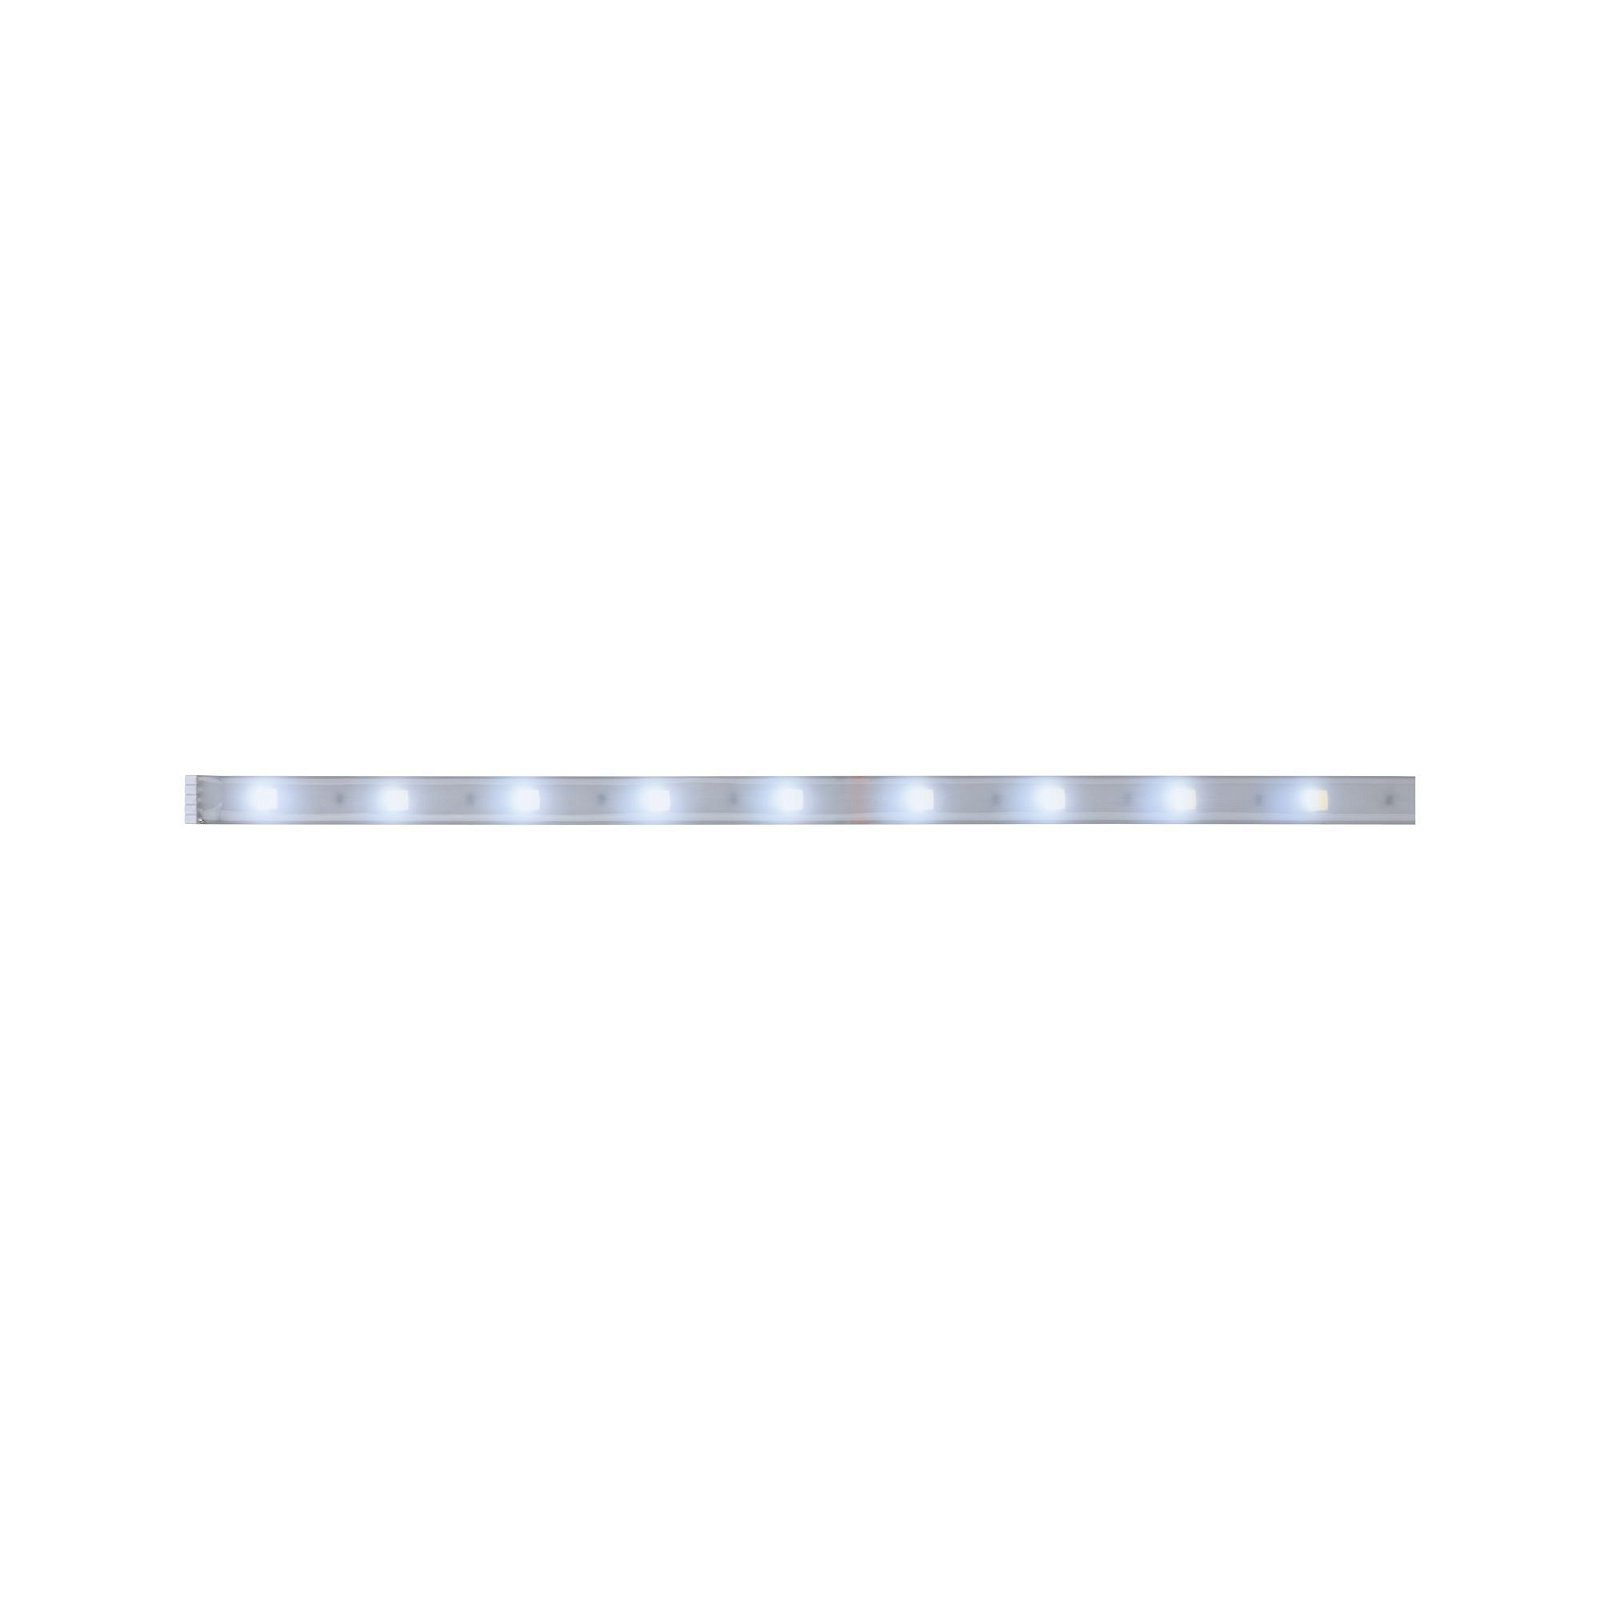 PAULMANN LICHT MaxLED 250 (79878) LED Strips White Tunable